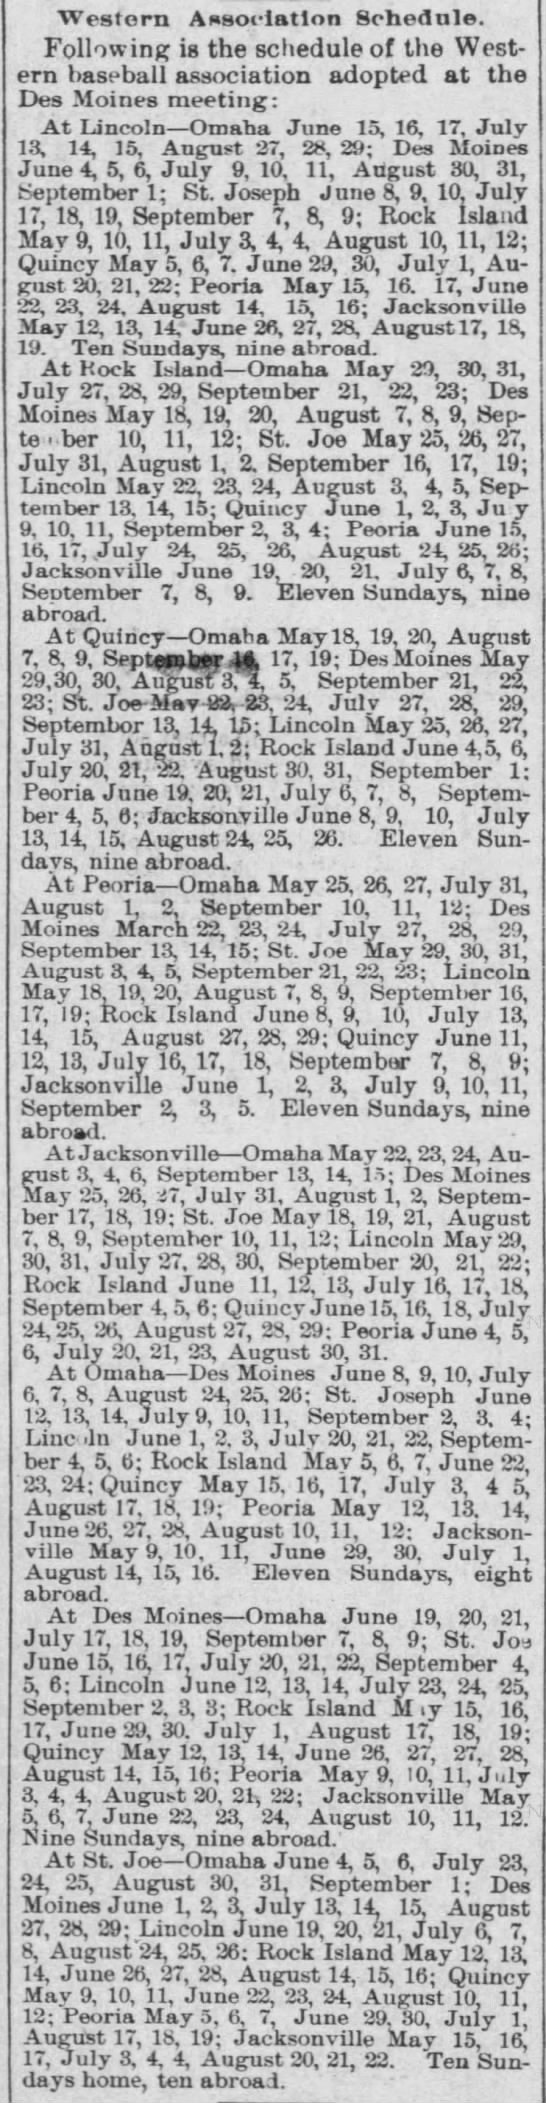 1895 Western Association schedule - 